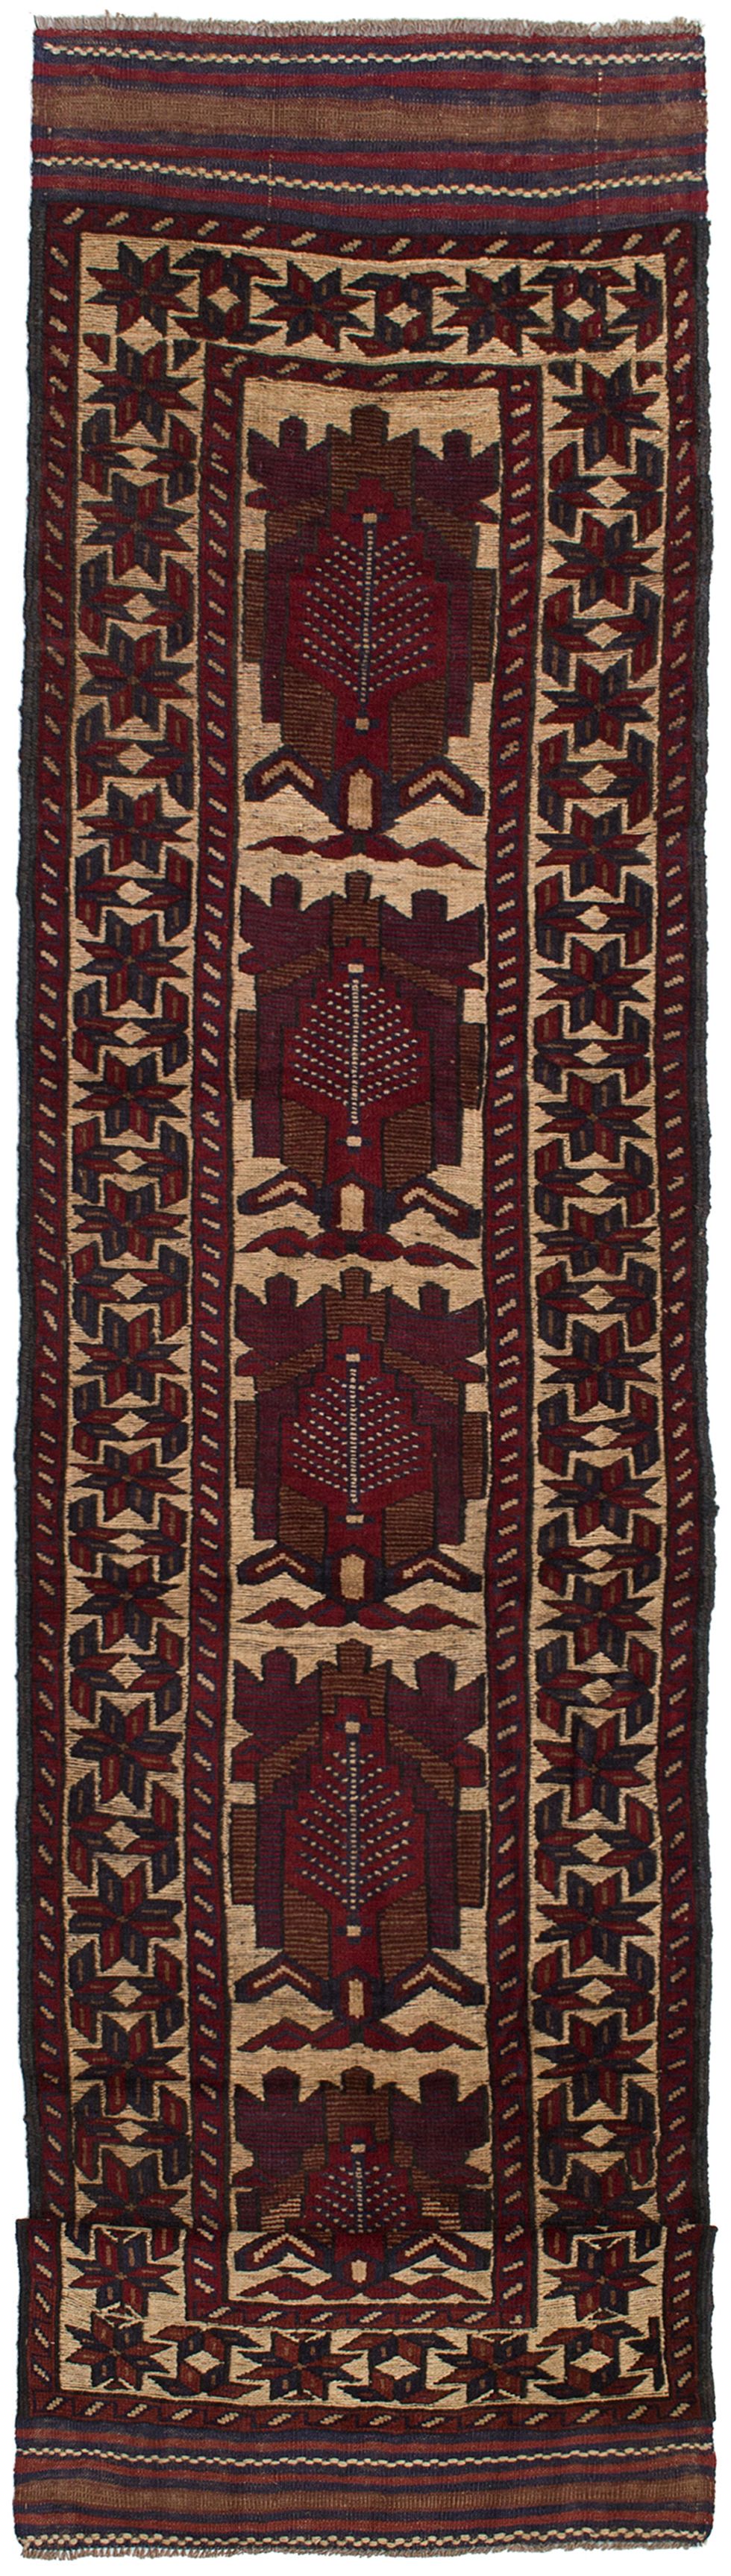 Hand-knotted Tajik Caucasian Dark Red Wool Rug 2'8" x 11'5" Size: 2'7" x 11'5"  